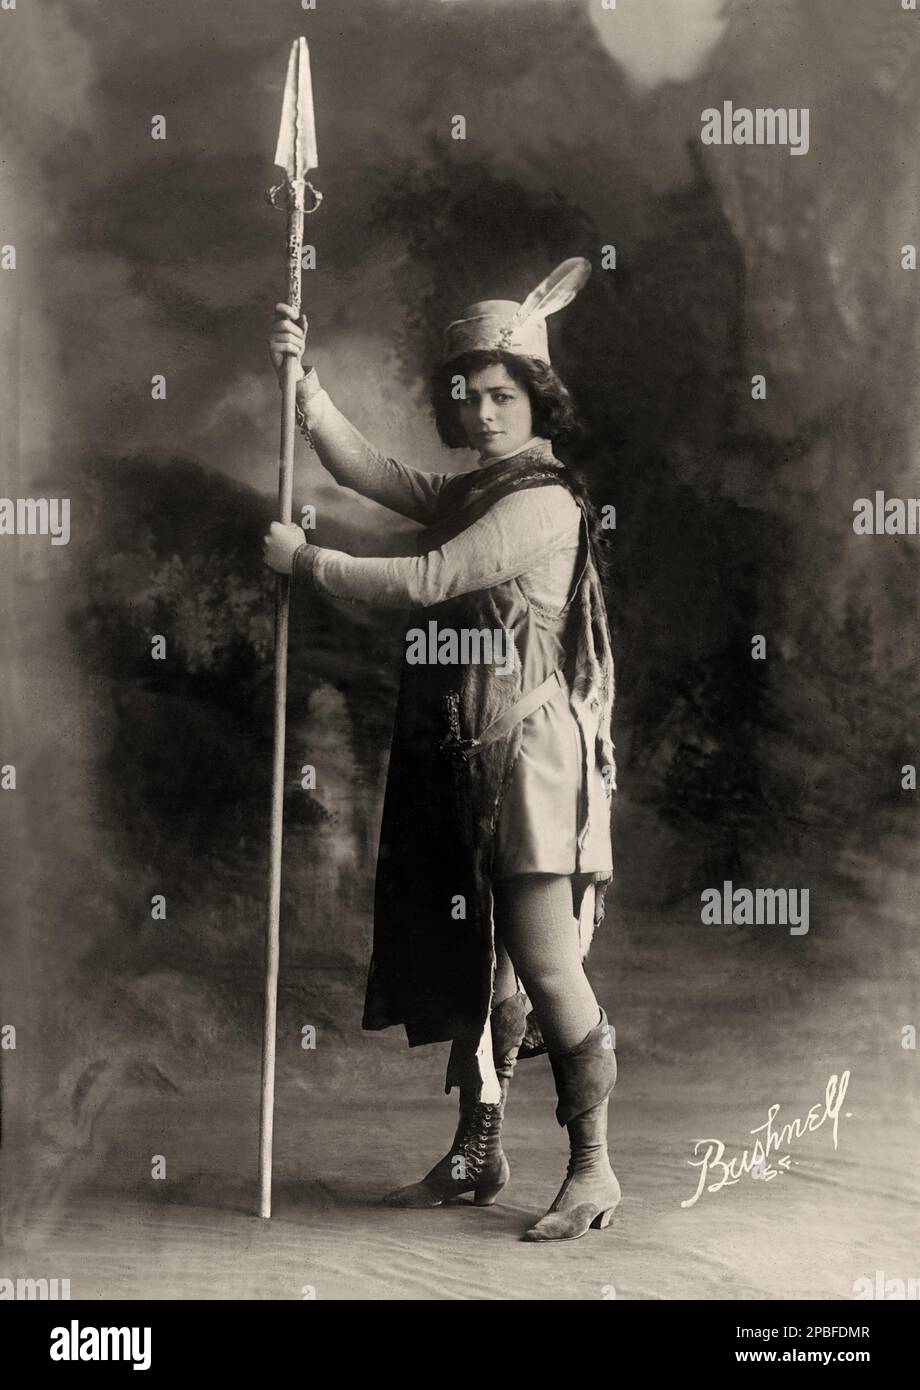 1910 , New York , USA : die amerikanische Theaterdarstellerin MAUDE ADAMS ( 1972 - 1953 ) as ROSALIND , Portrait von Bushnell Photo., co , San Francisco , produziert von Charles Frohman . Während der Titel „Beste Schauspielerin ihres Tages“ fast unbestreitbar Ethel Barrymore gehört, war Maude Adams zweifellos ihre beliebteste und erfolgreichste. Für ihre unzähligen liebenden Fans war sie am besten als einfach „Maudie“ bekannt. Sein berühmtester für ihre Rolle: Peter Pan von J. M. Barrie - attrice - TEATRO - THEATER - DIVA - DIVINA - BROADWAY - BELLE EPOQUE - Hut - cappello - Federn - Piume - Piuma - Stockfoto